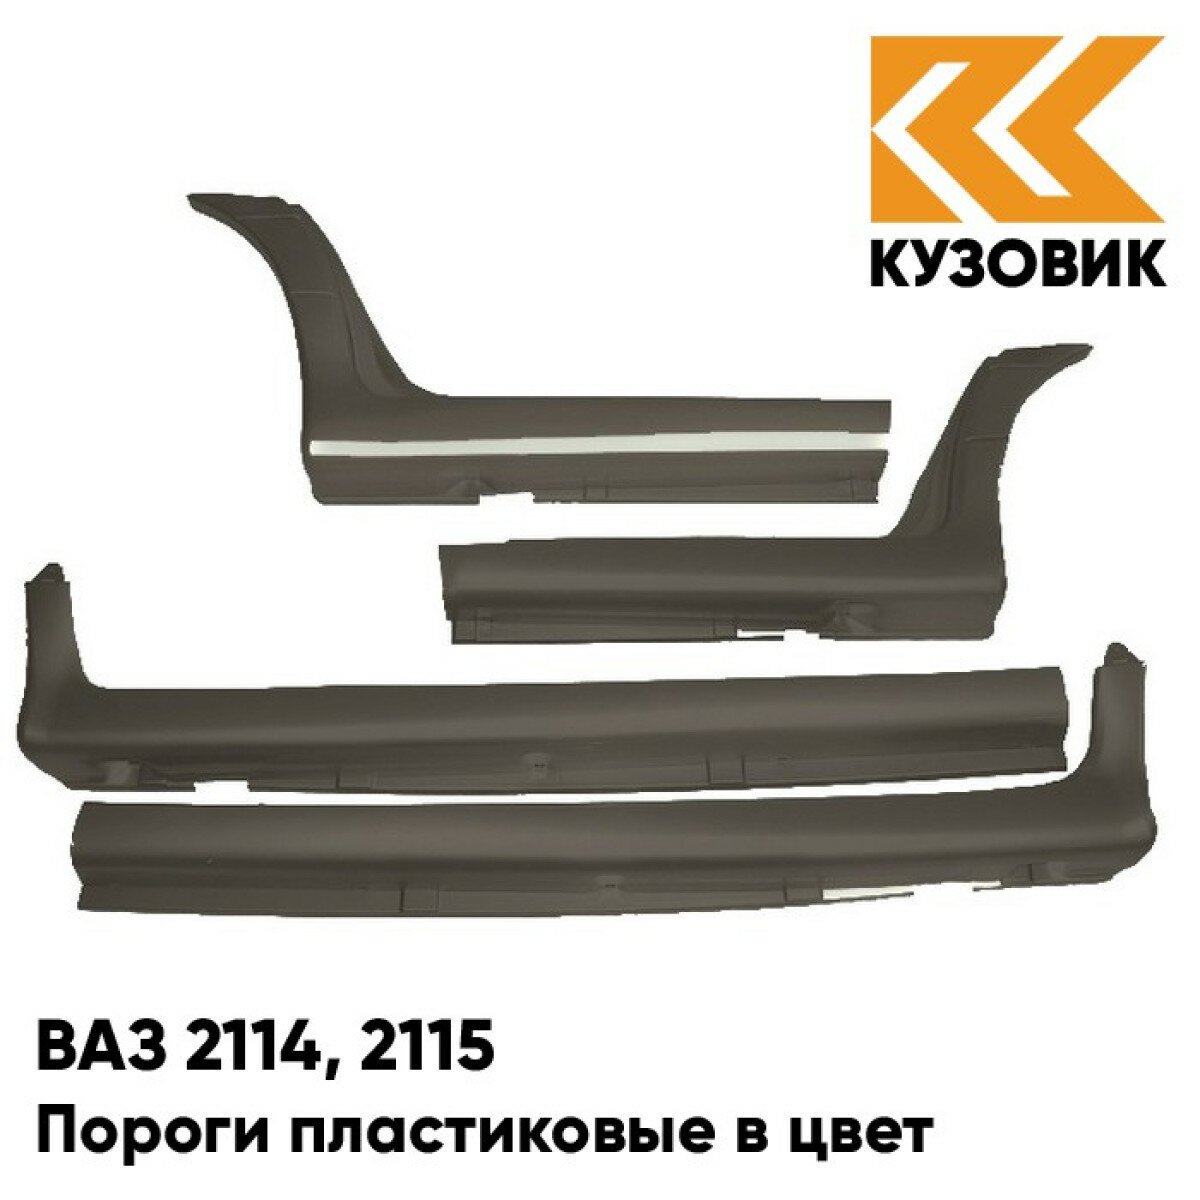 Пороги пластиковые в цвет кузова ВАЗ 2114 2115 283 - Кашемир - Темно-коричневый комплект (комплект 4 шт)